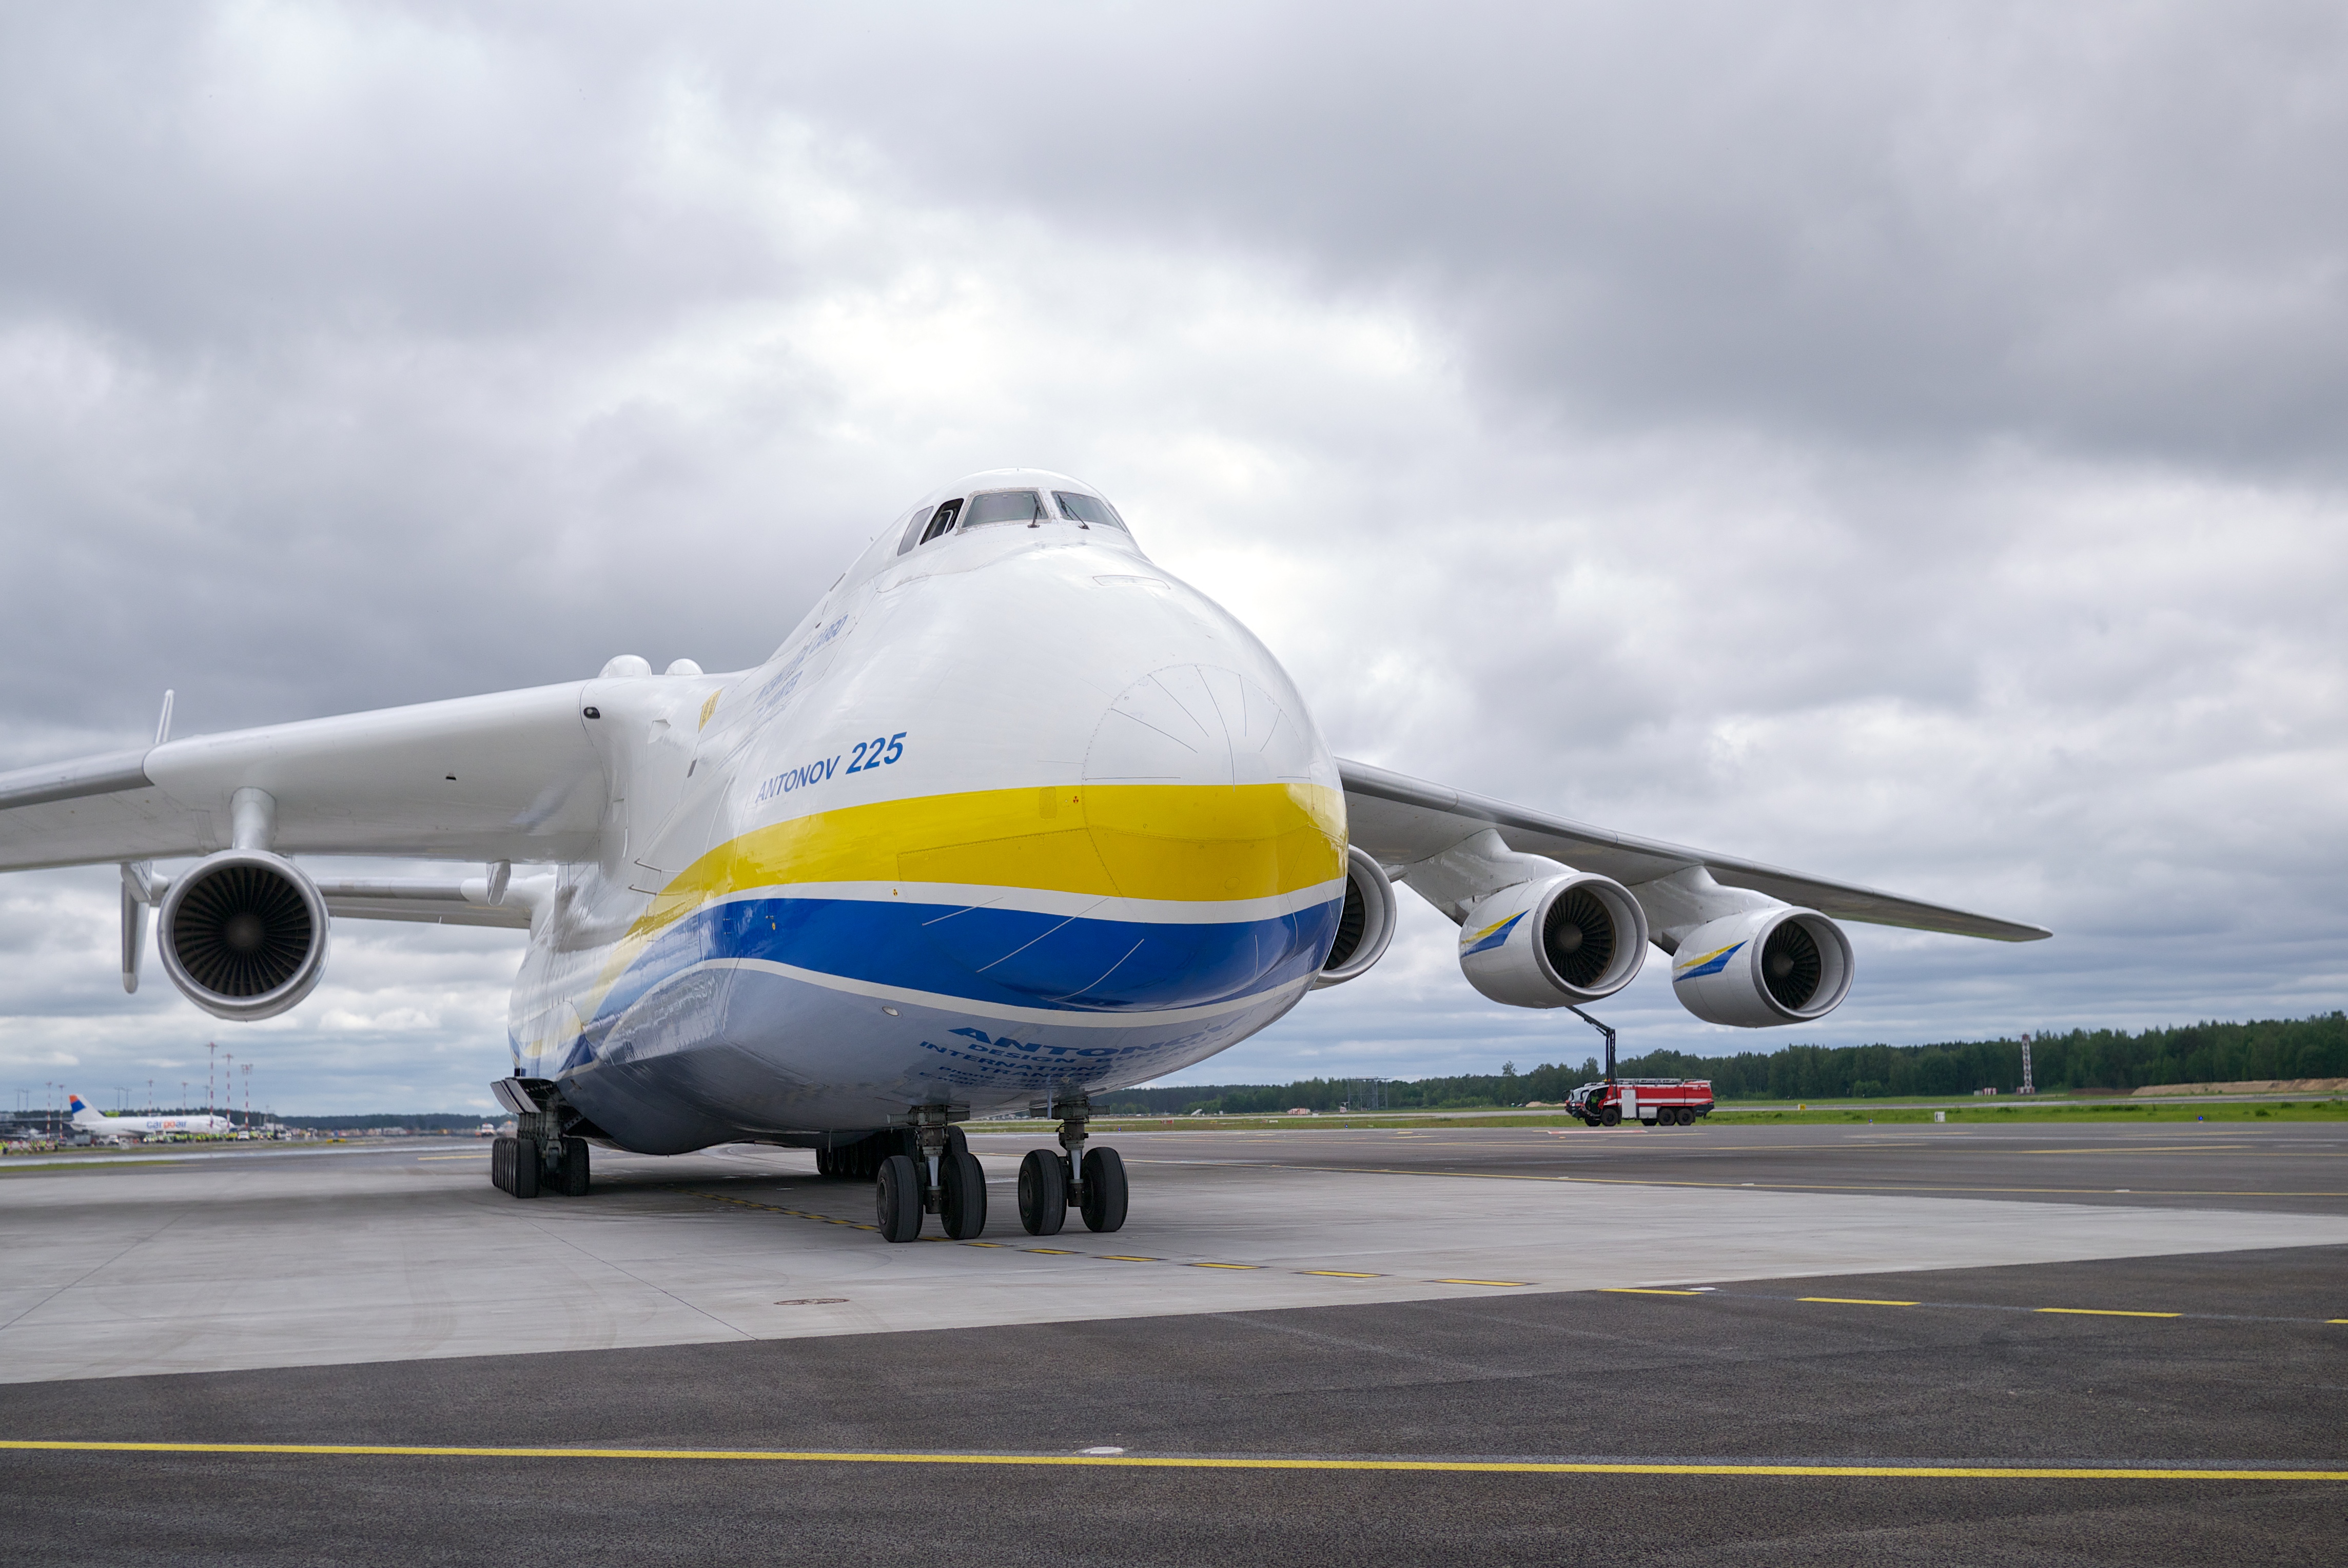 Rīgā nolaižas pasaulē lielākā lidmašīna An-225 Mriya - 66